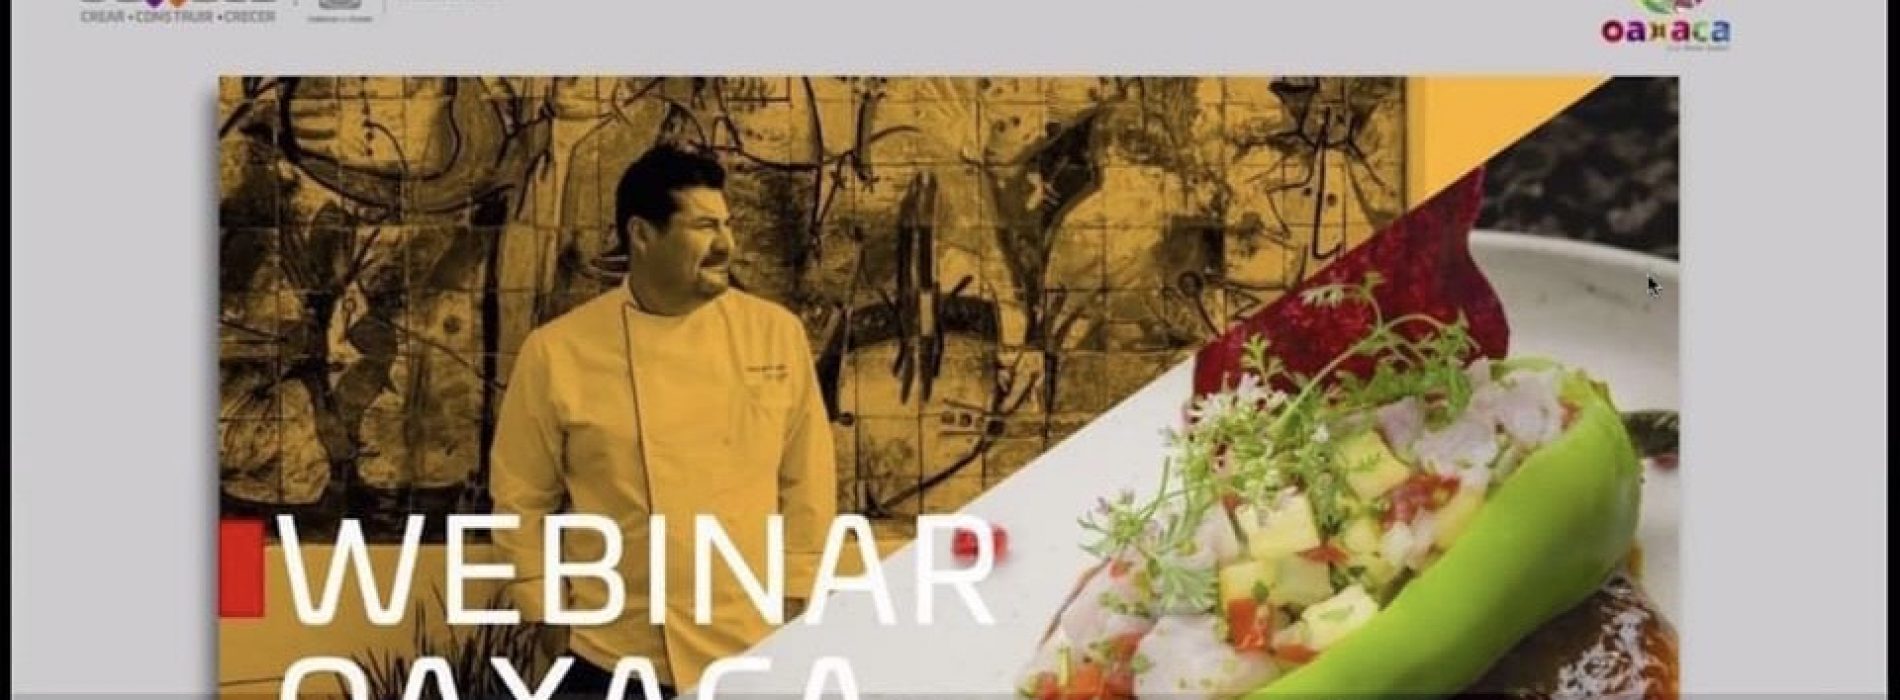 Oaxaca preparado para ofrecer experiencias gastronómicas de excelencia y calidad mundial: Chef Alejandro Ruiz